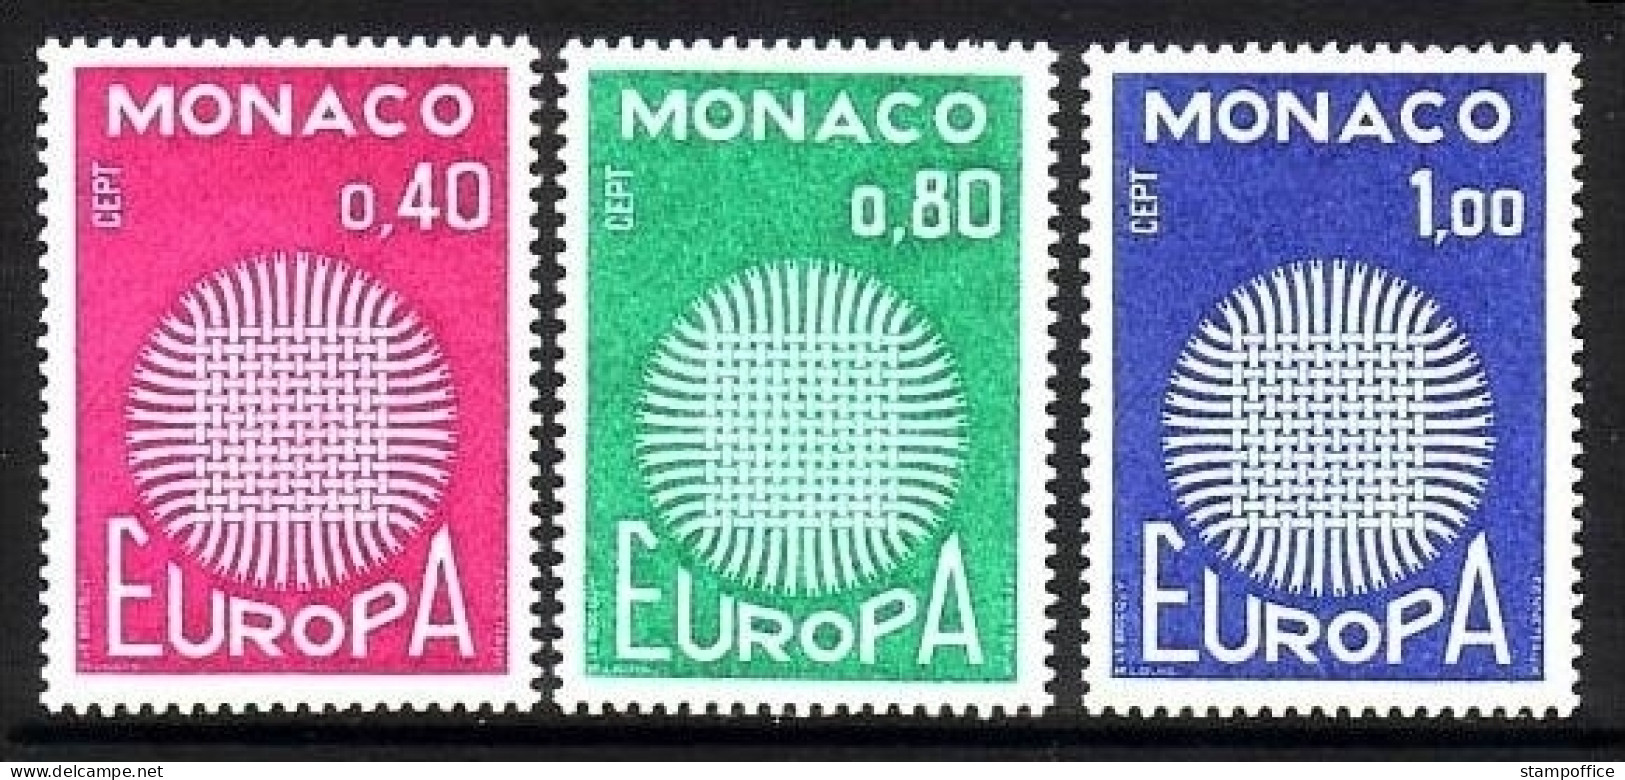 MONACO MI-NR. 977-979 POSTFRISCH EUROPA 1970 SONNENSYMBOL - 1970